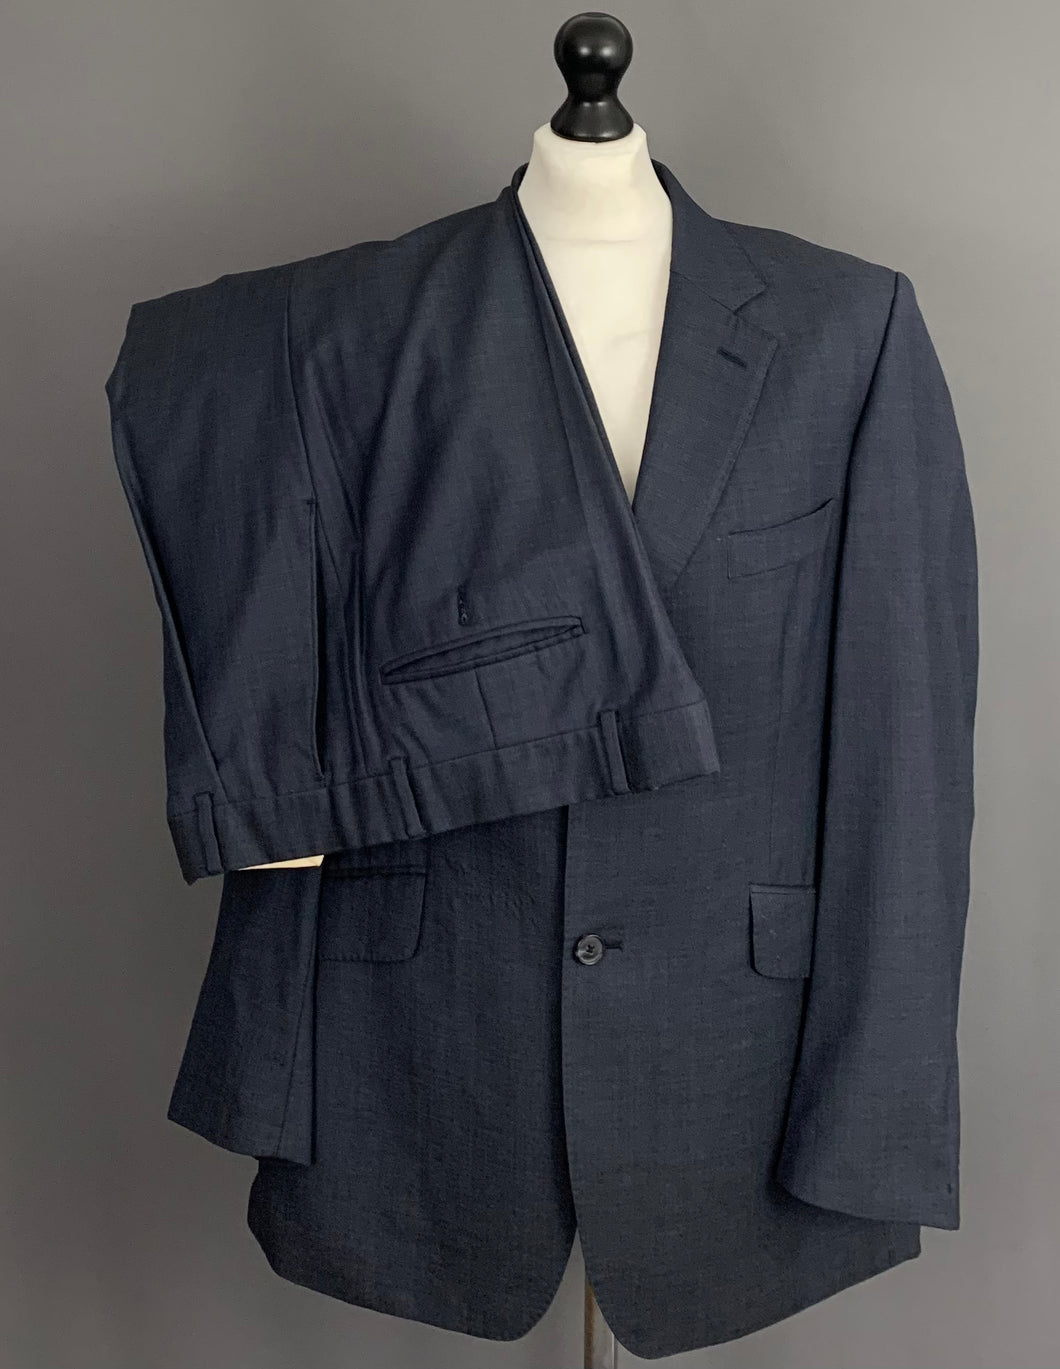 CROMBIE SUIT - Blue Wool & Cashmere - Size 40R - 40